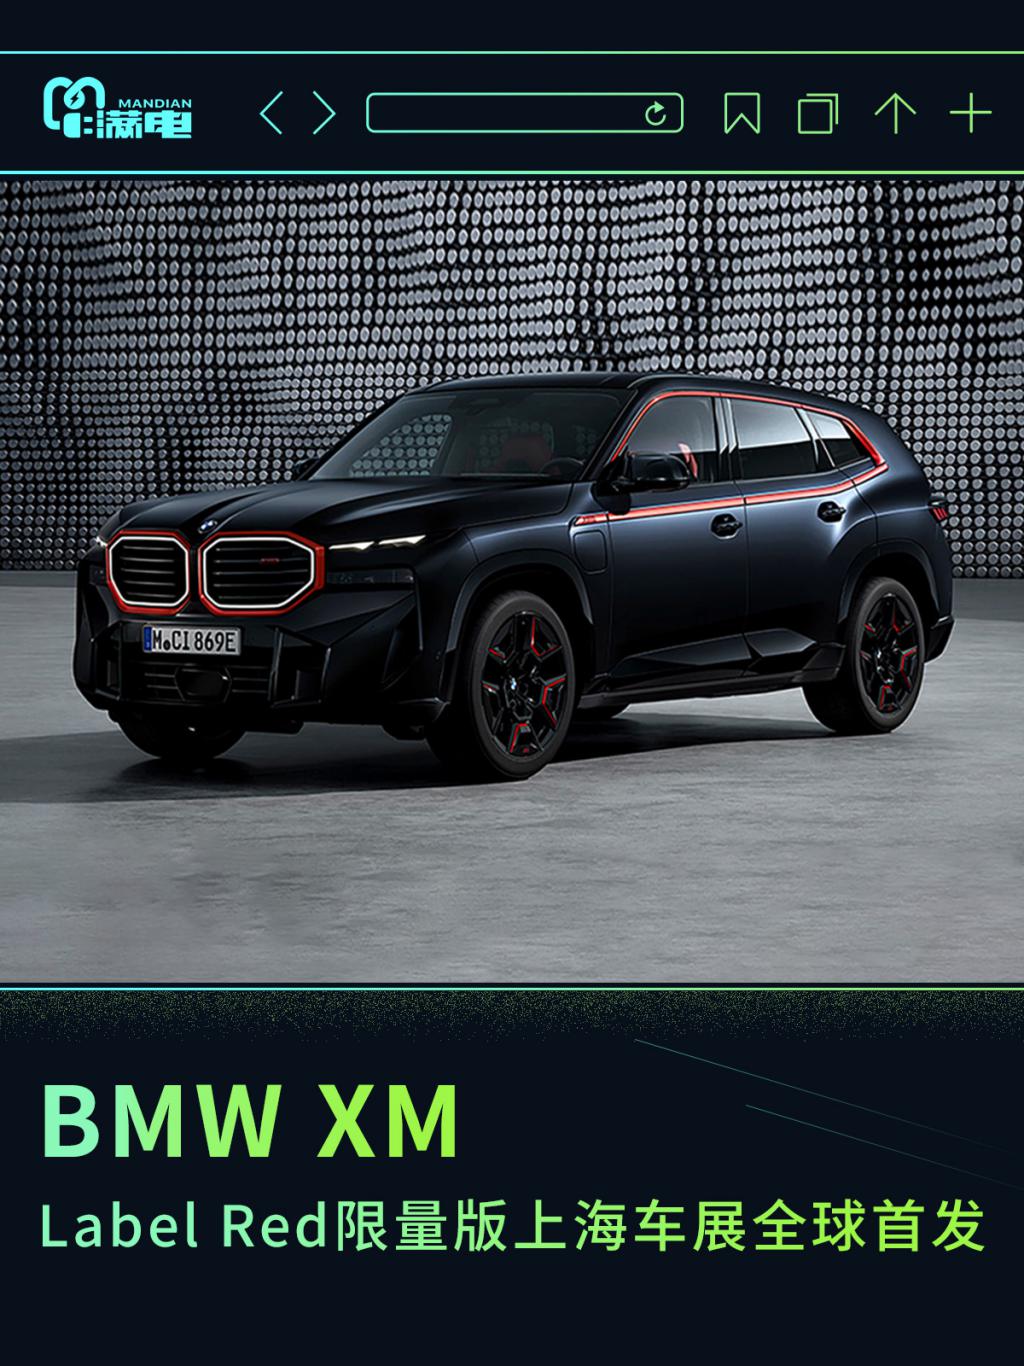 BMW XM Label Red 限量版上海车展迎来亮相